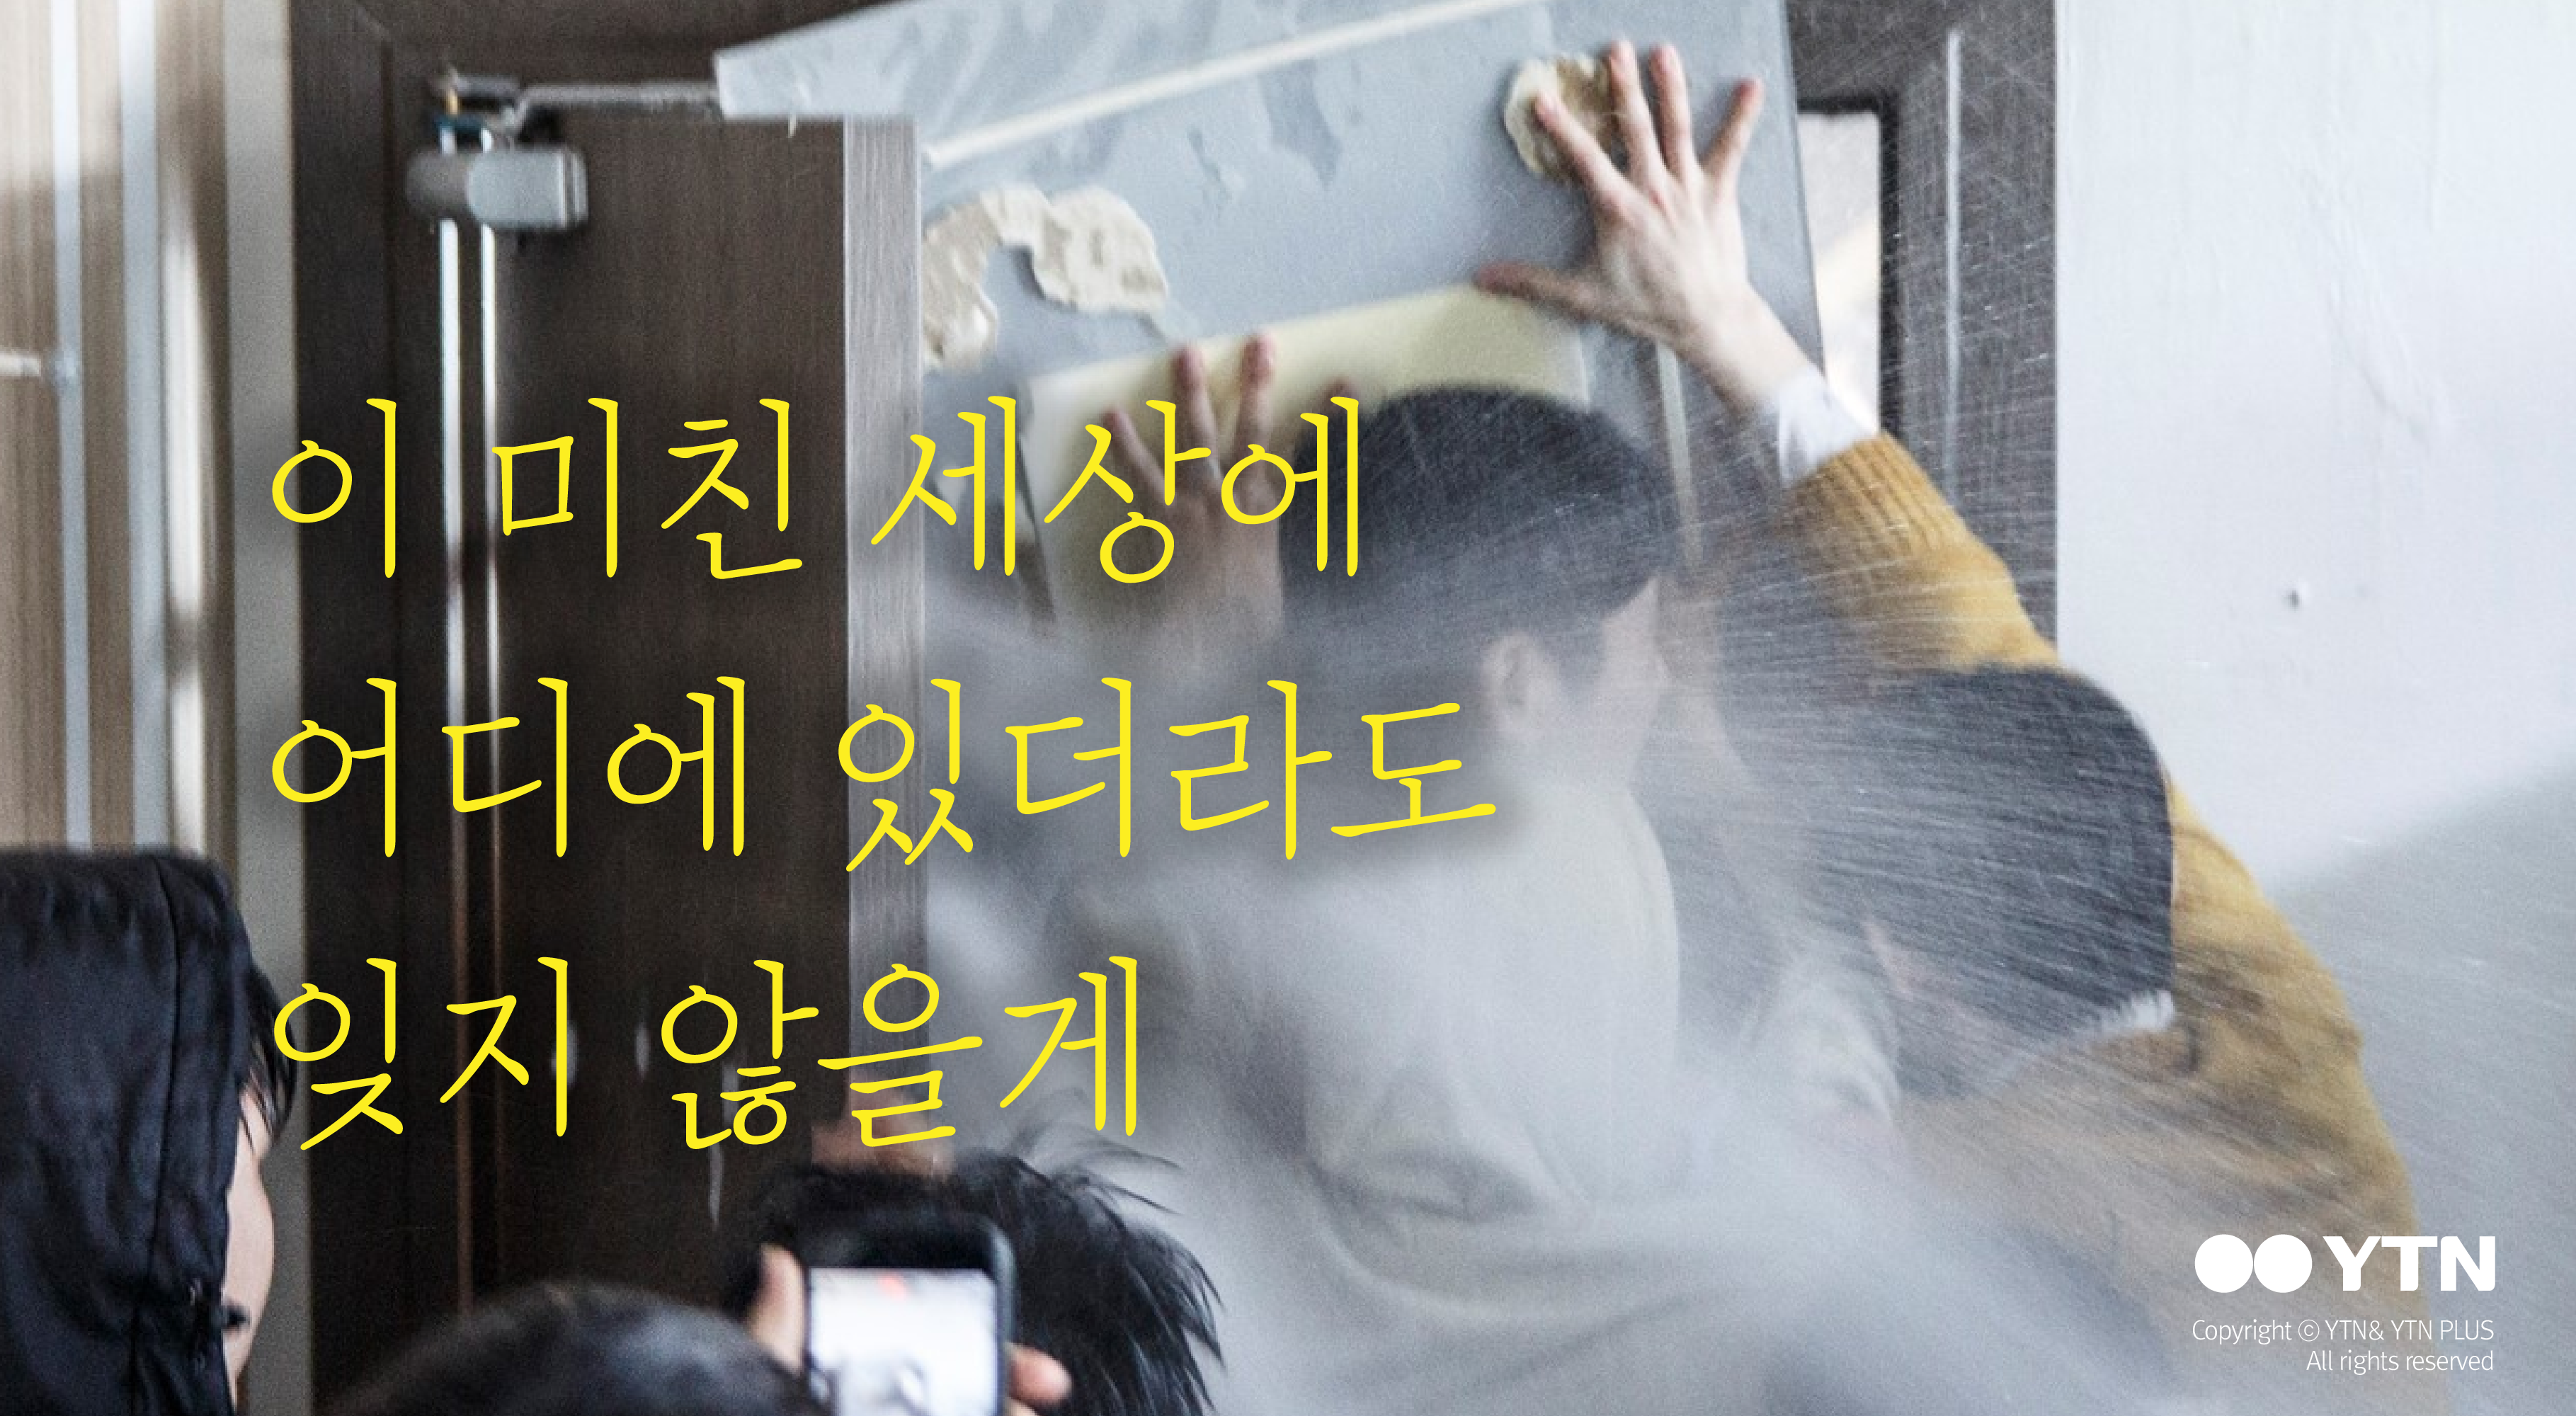 [한컷뉴스] 새내기의 눈으로 본 '일부 학생들의 폭력 시위'